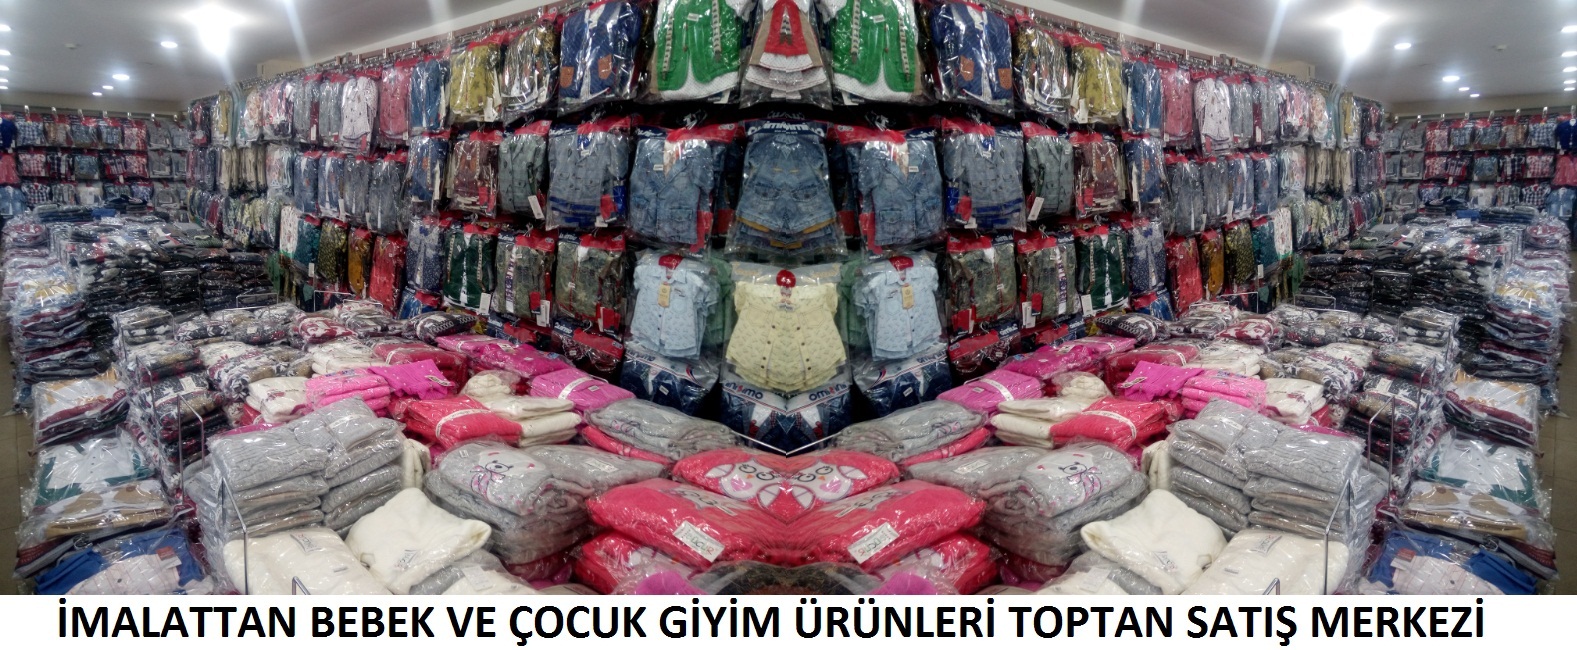 Турецкие Вещи Оптом Интернет Магазин